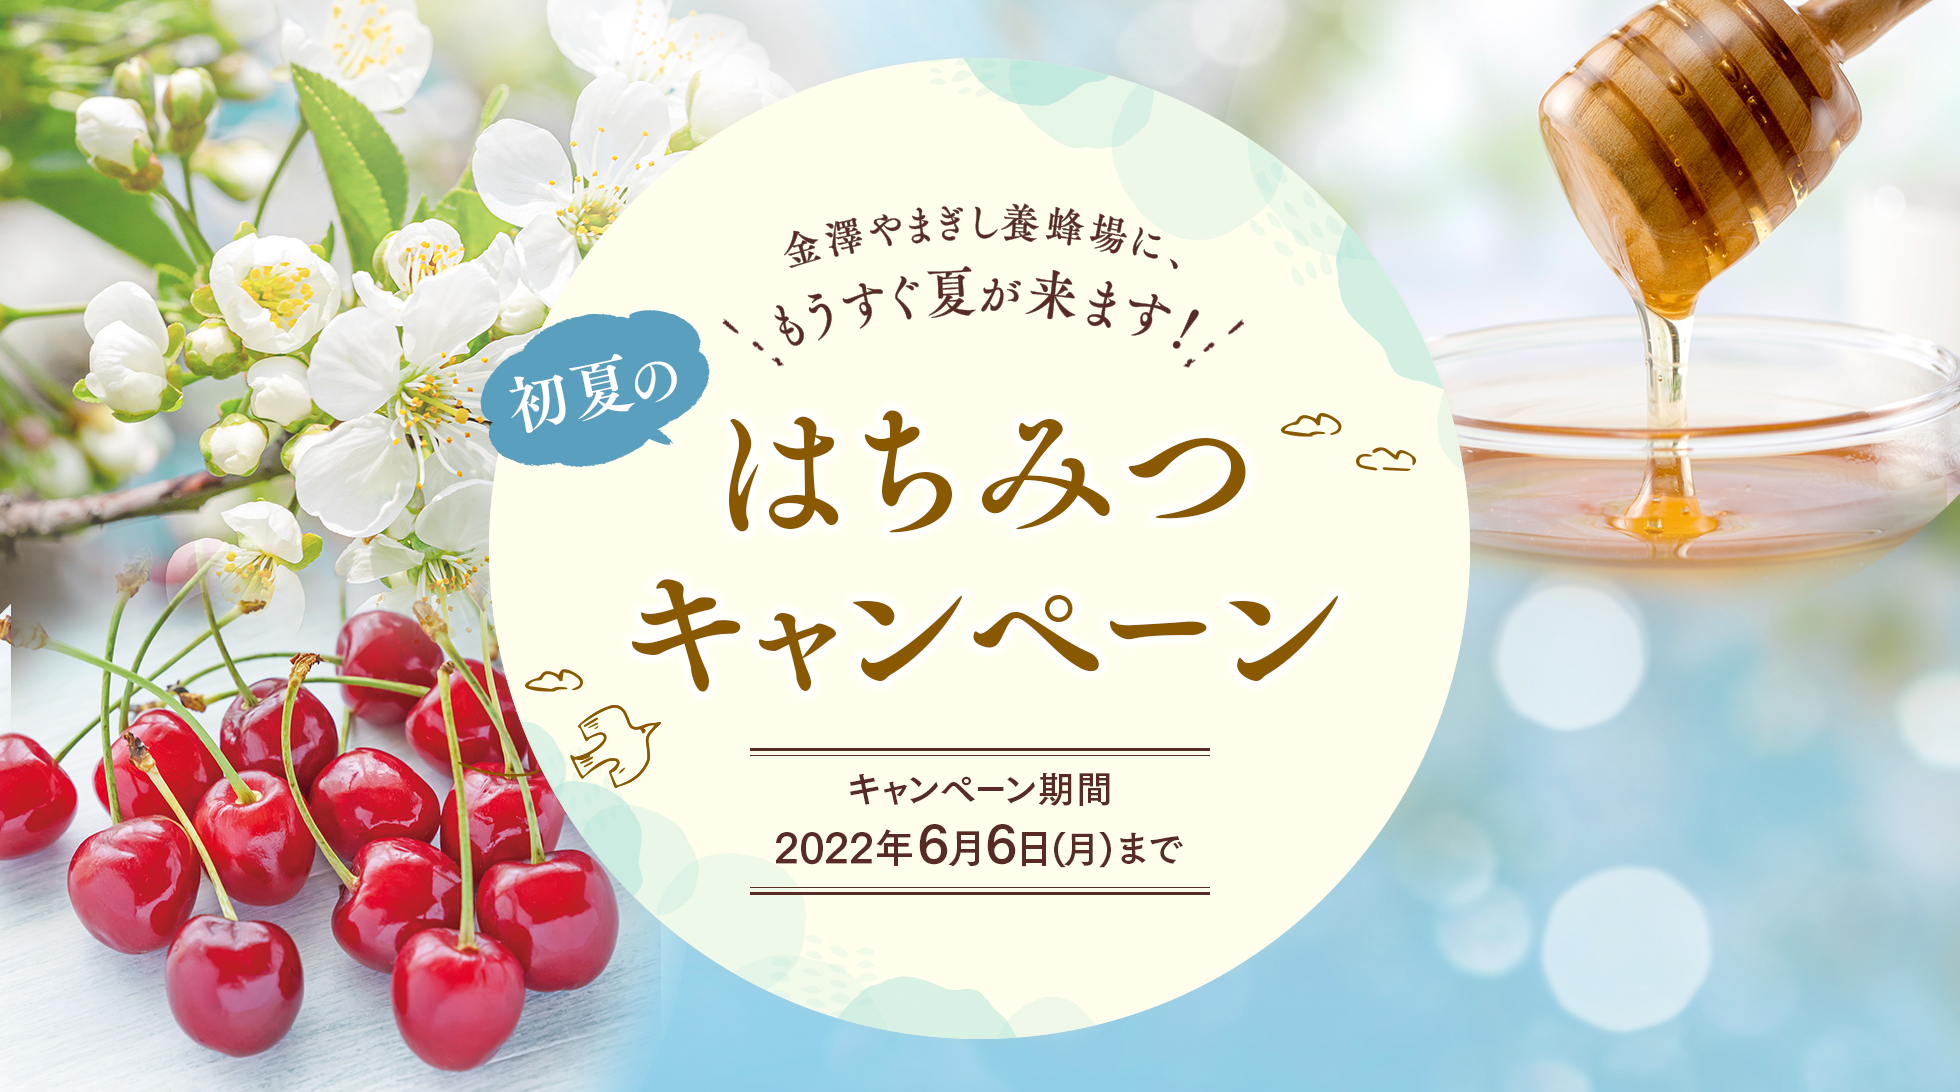 金澤やまぎし養蜂場 初夏のはちみつキャンペーン 2022年6月6日(月)まで